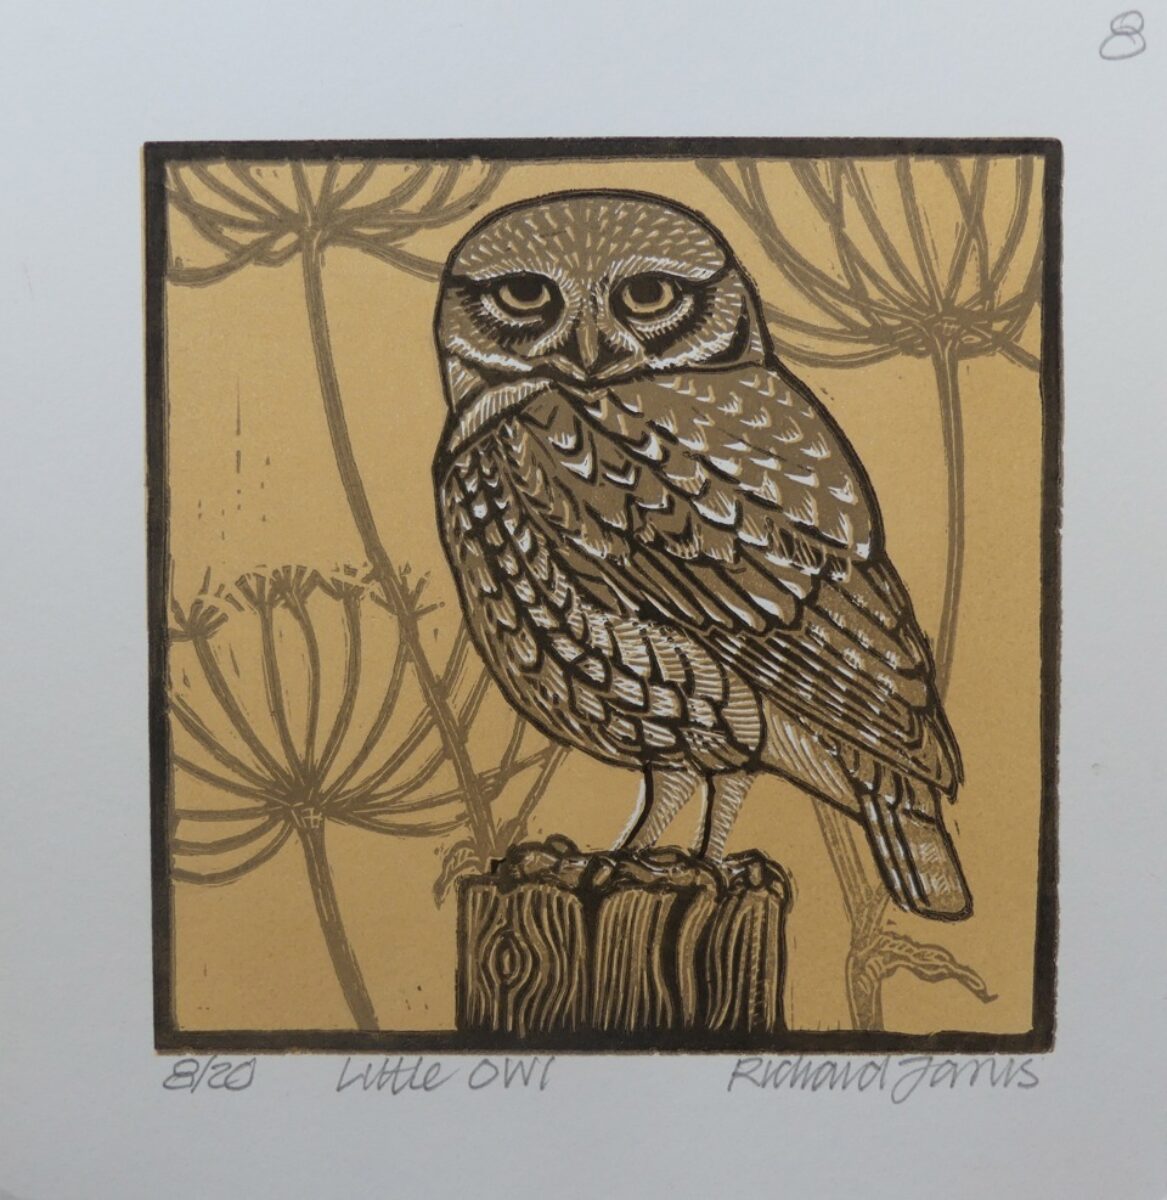 Artwork image titled: Little Owl